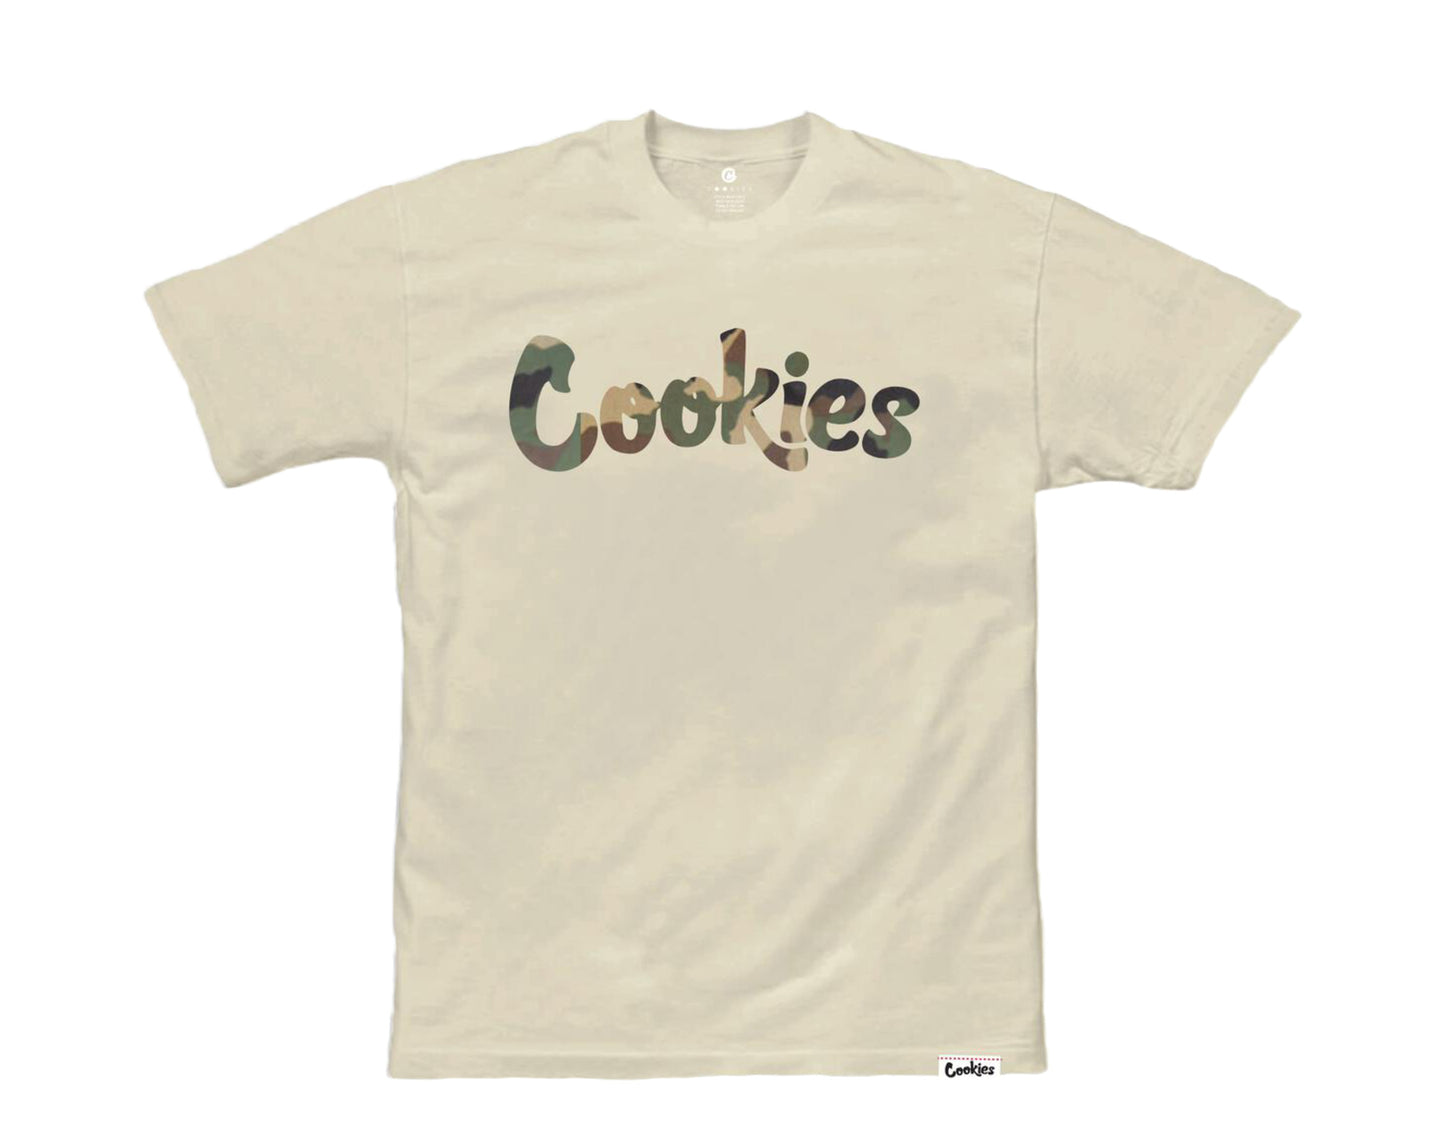 Cookies Original Mint Cream/Green Camo Men's Tee Shirt 1546T4384-CGC